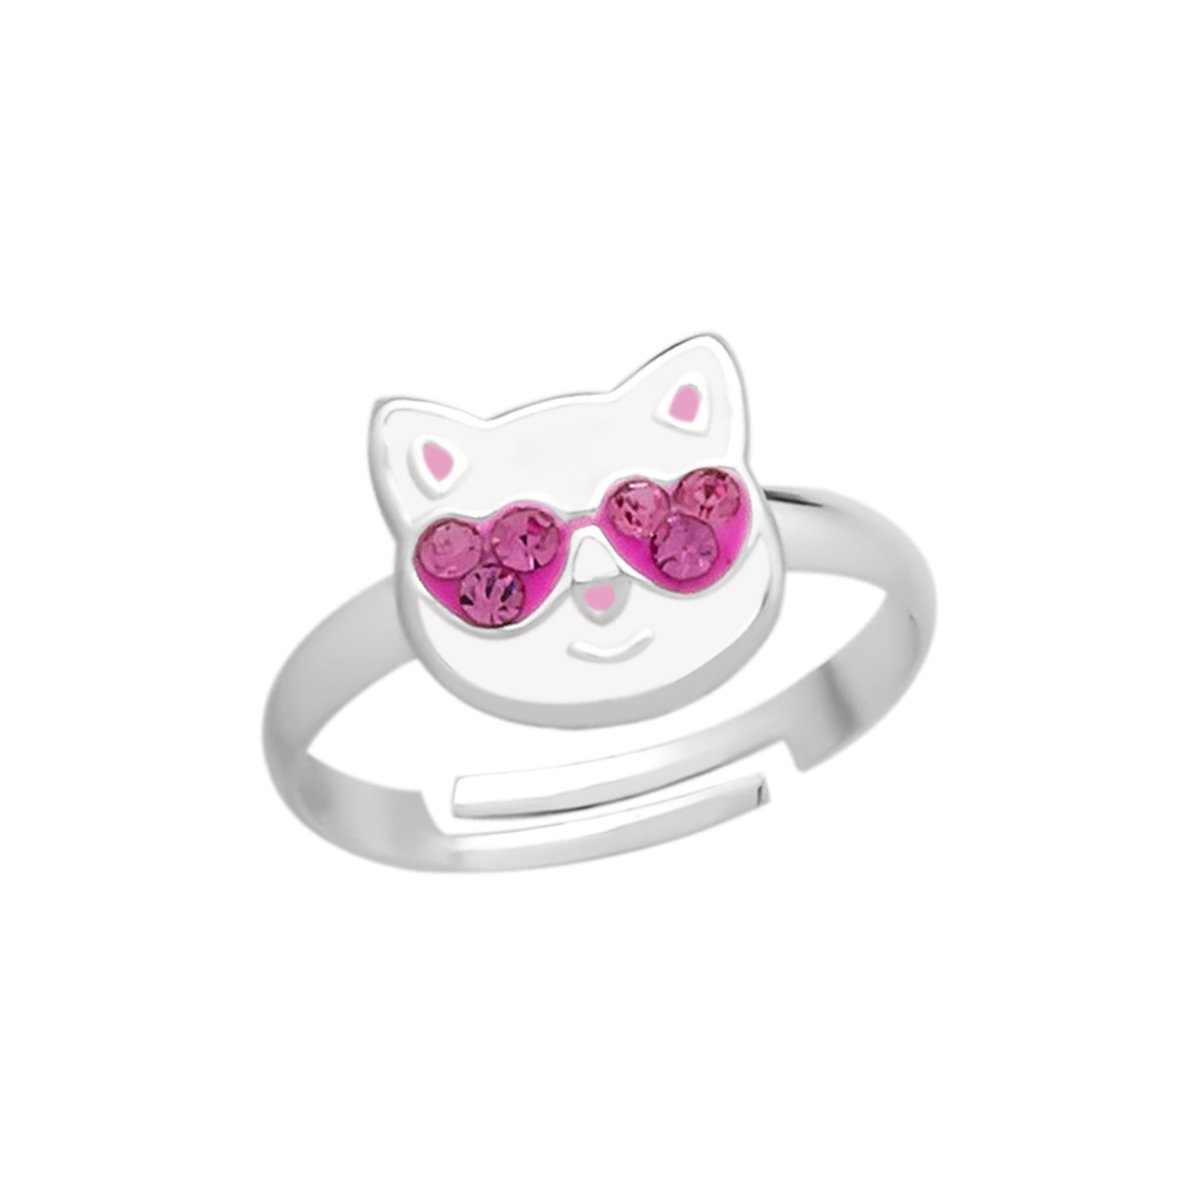 Ring meisje kind | Ring kinderen | Zilveren ring, witte kattenkop met roze zonnebril